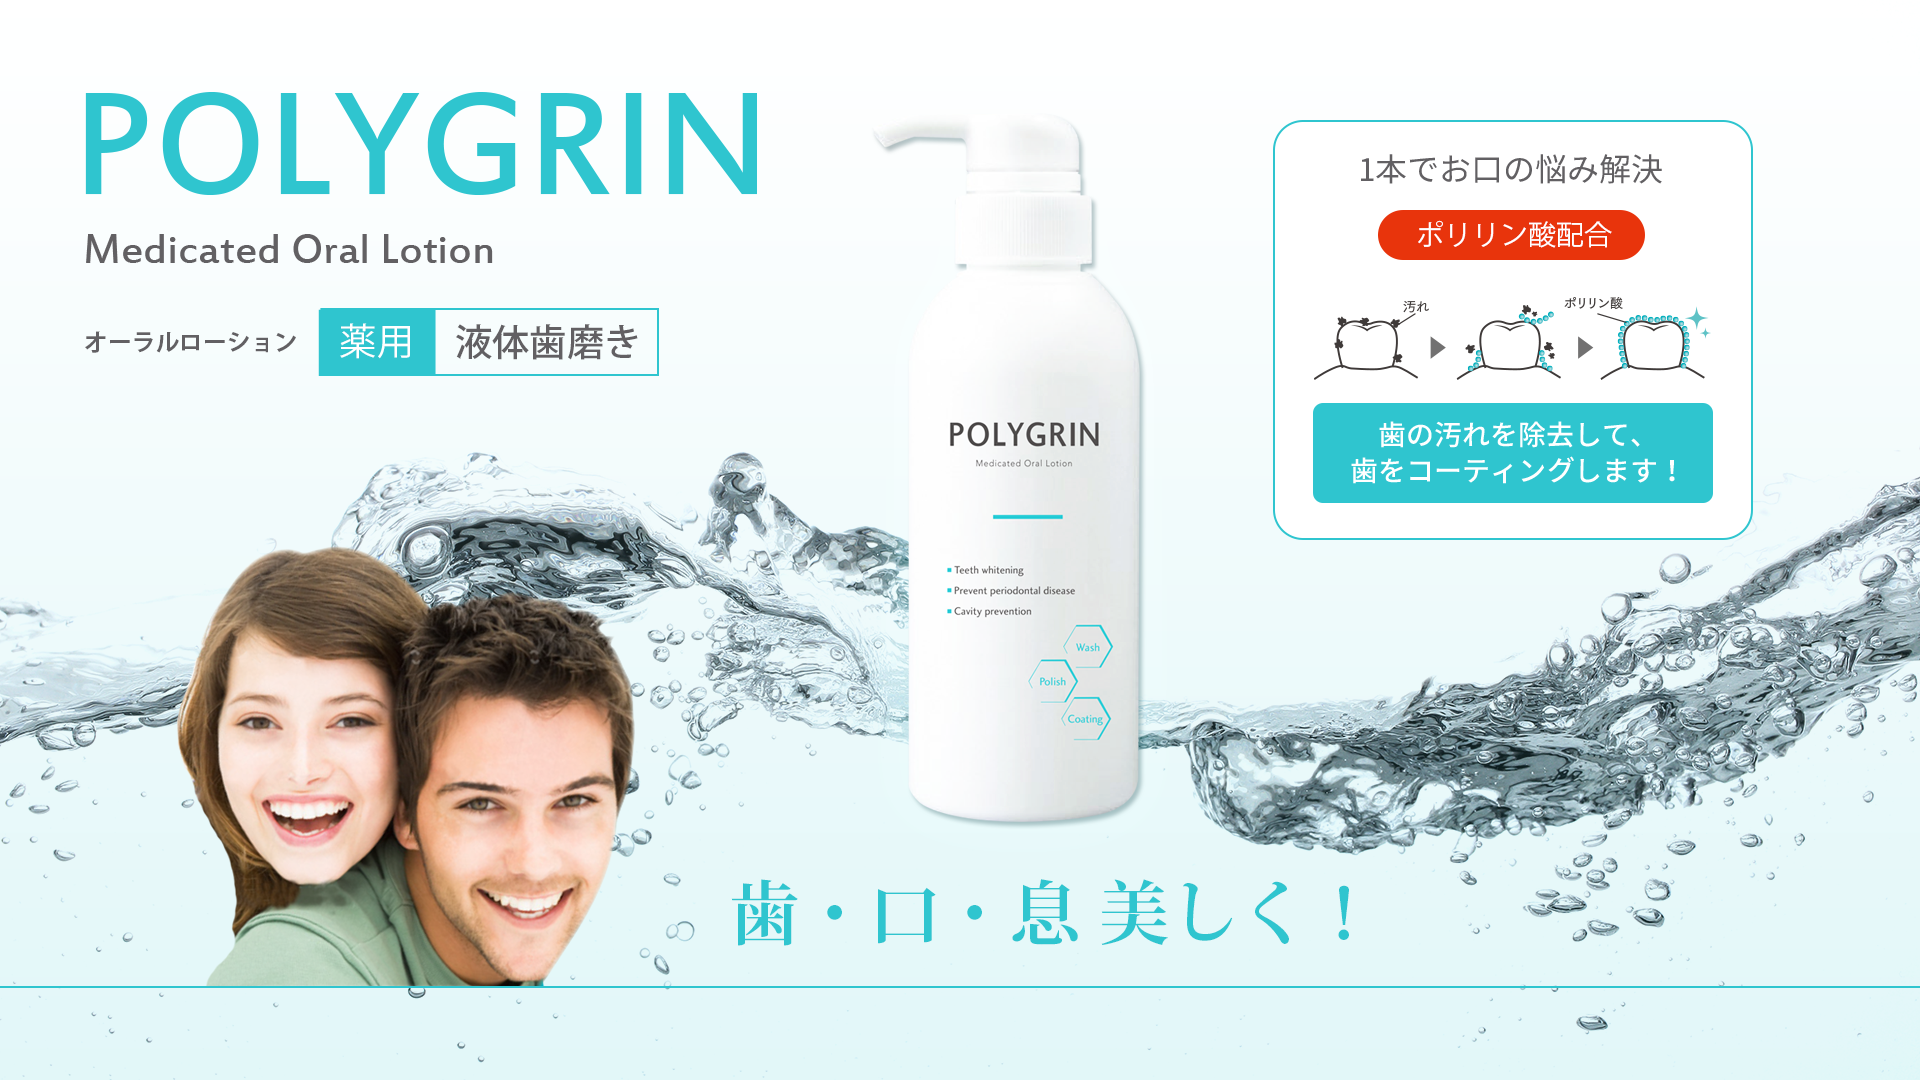 薬用液体歯磨き POLYGRIN（ポリグリン）は、ポリリン酸配合で理想的な口腔内環境を維持するために開発されたマウスウォッシュで、ホームホワイトニング向け商品です。